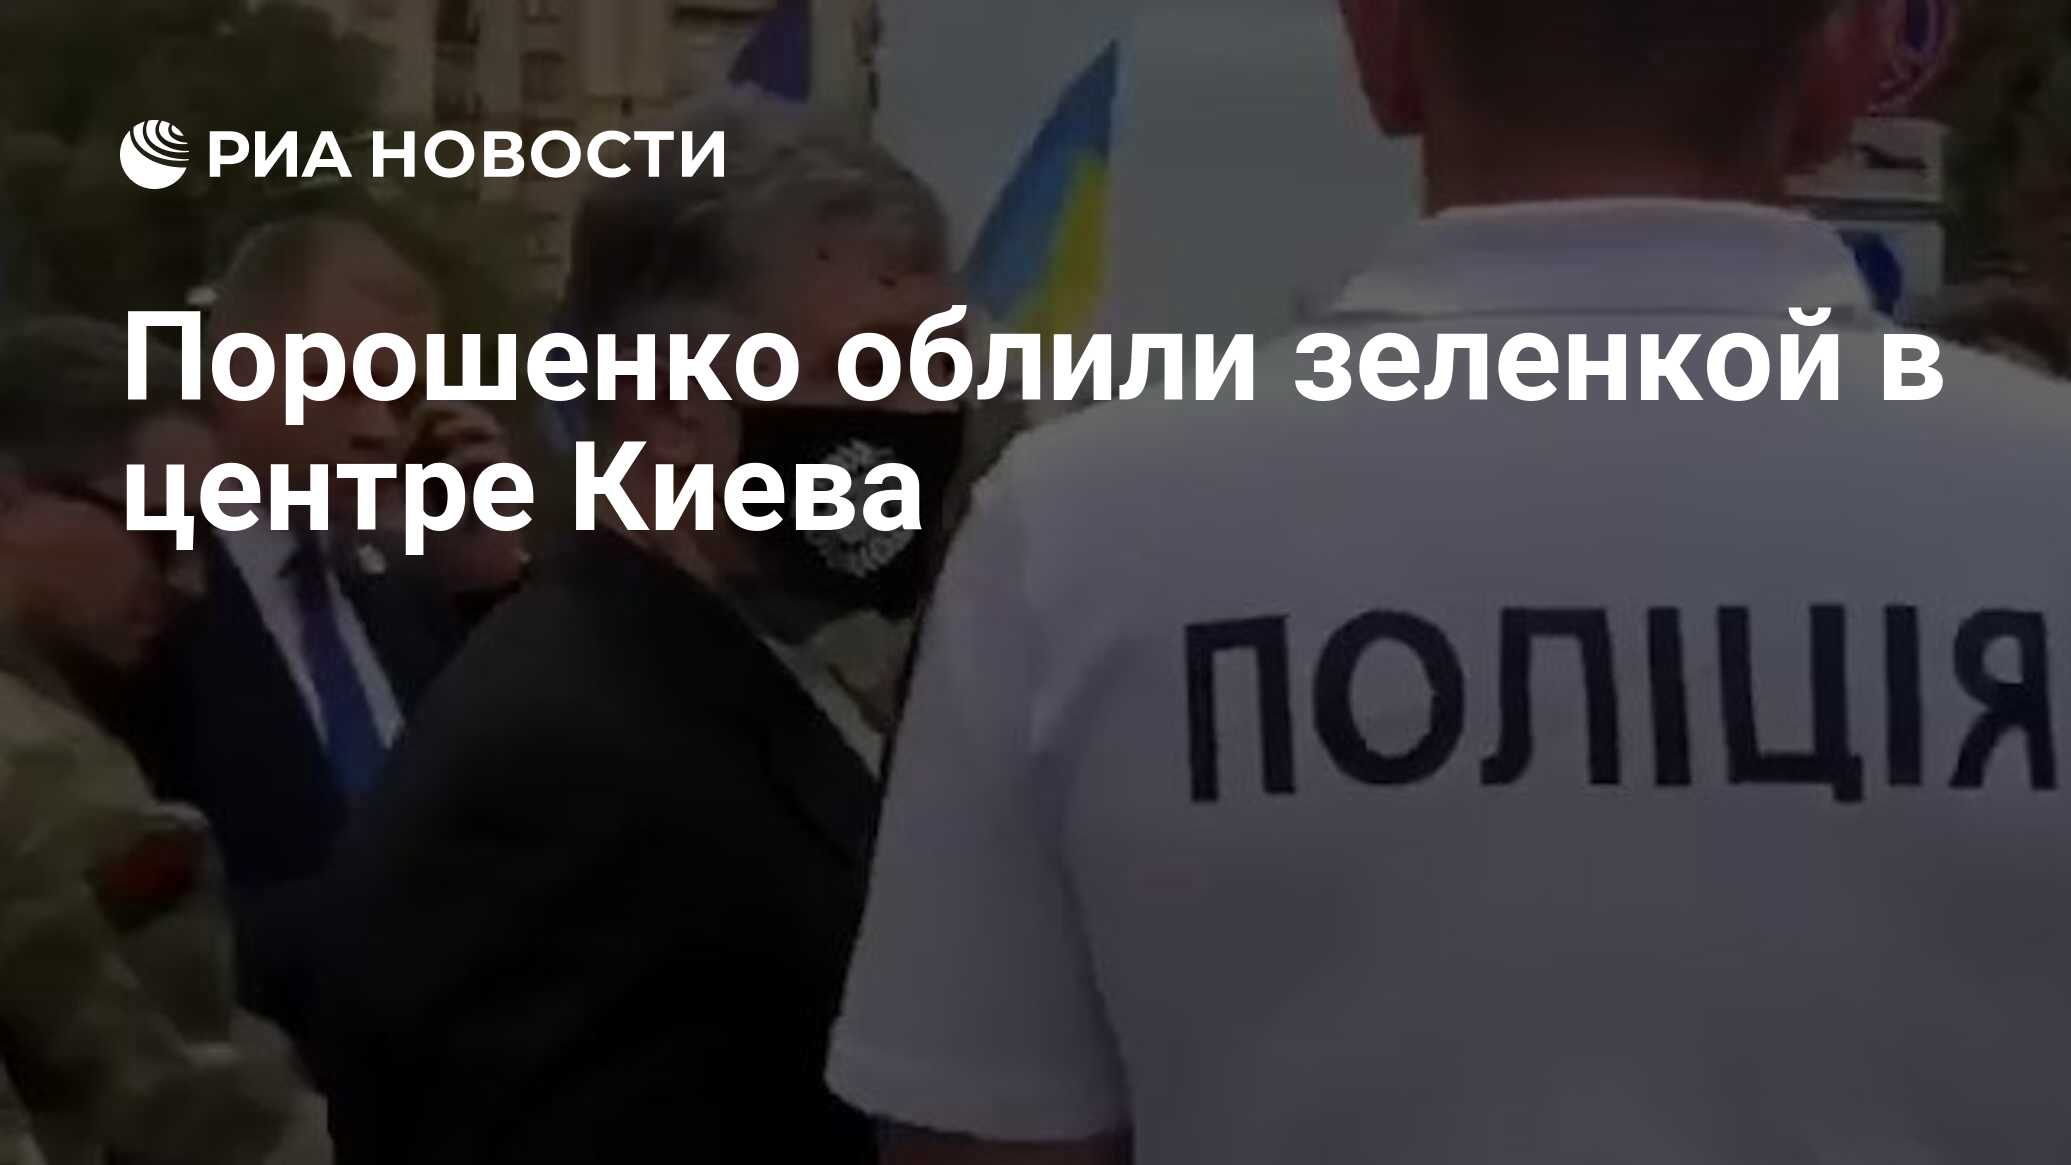 Порошенко облили зеленкой в центре Киева, сообщили СМИ ...